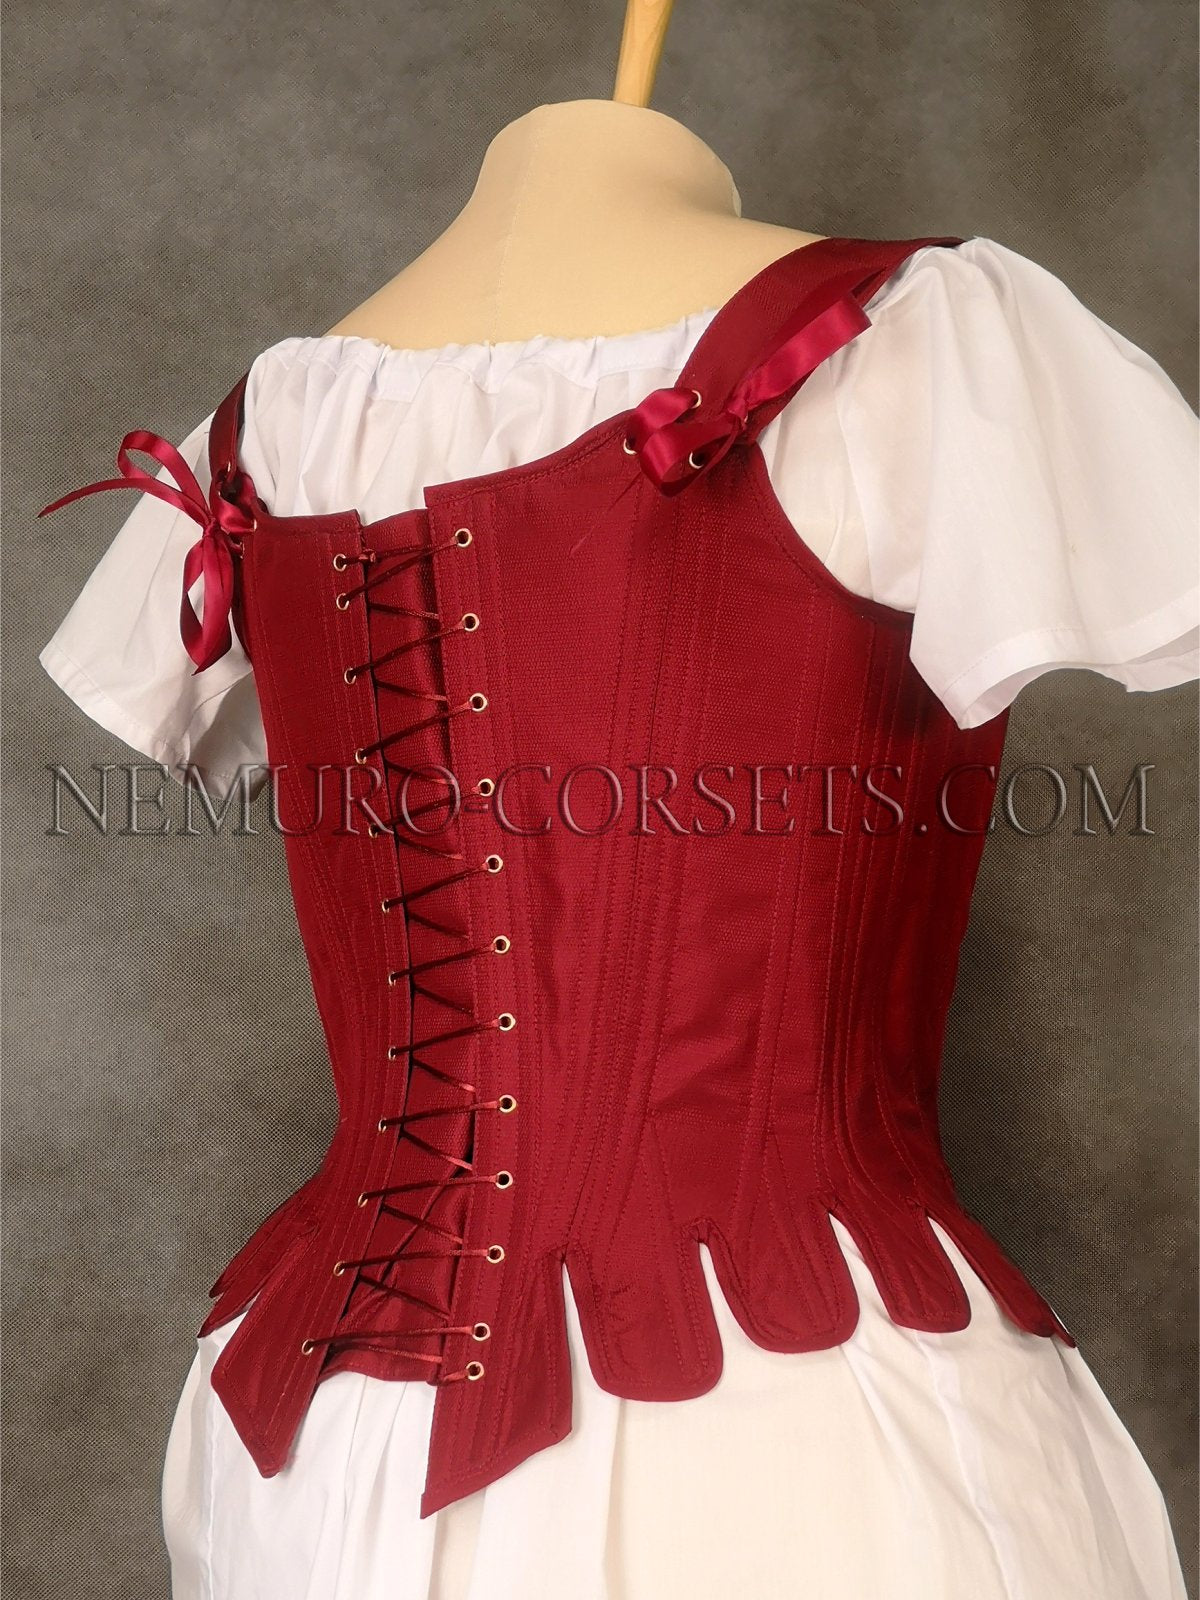 https://nemuro-corsets.com/cdn/shop/products/IMG_20201225_144723_1024x1024@2x.jpg?v=1629788712